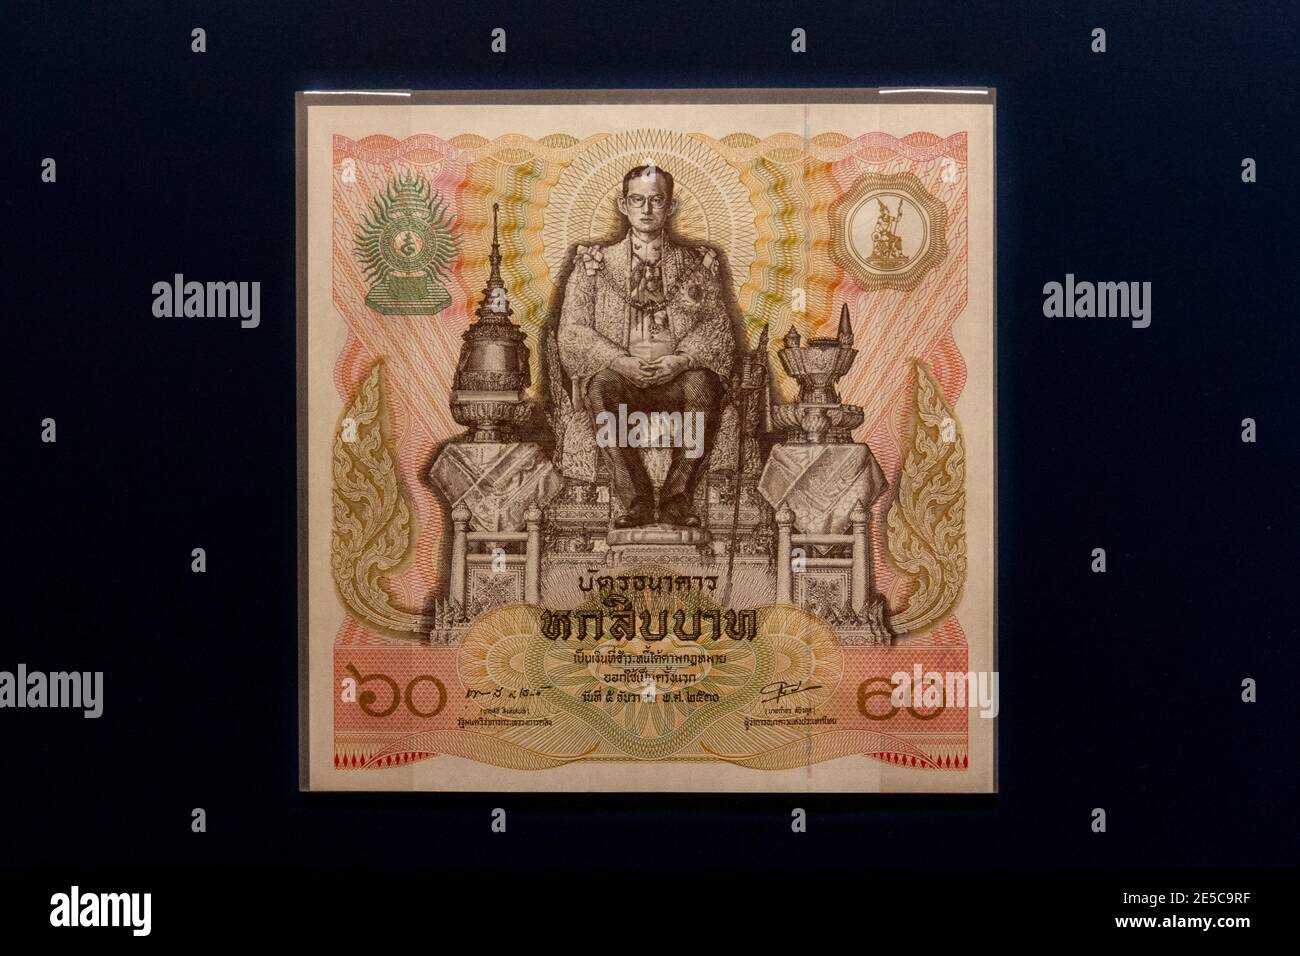 Una banconota da 60 baht in Thailandia emessa nel 1987, The Money Gallery, Ashmolean Museum, Oxford, UK. Foto Stock